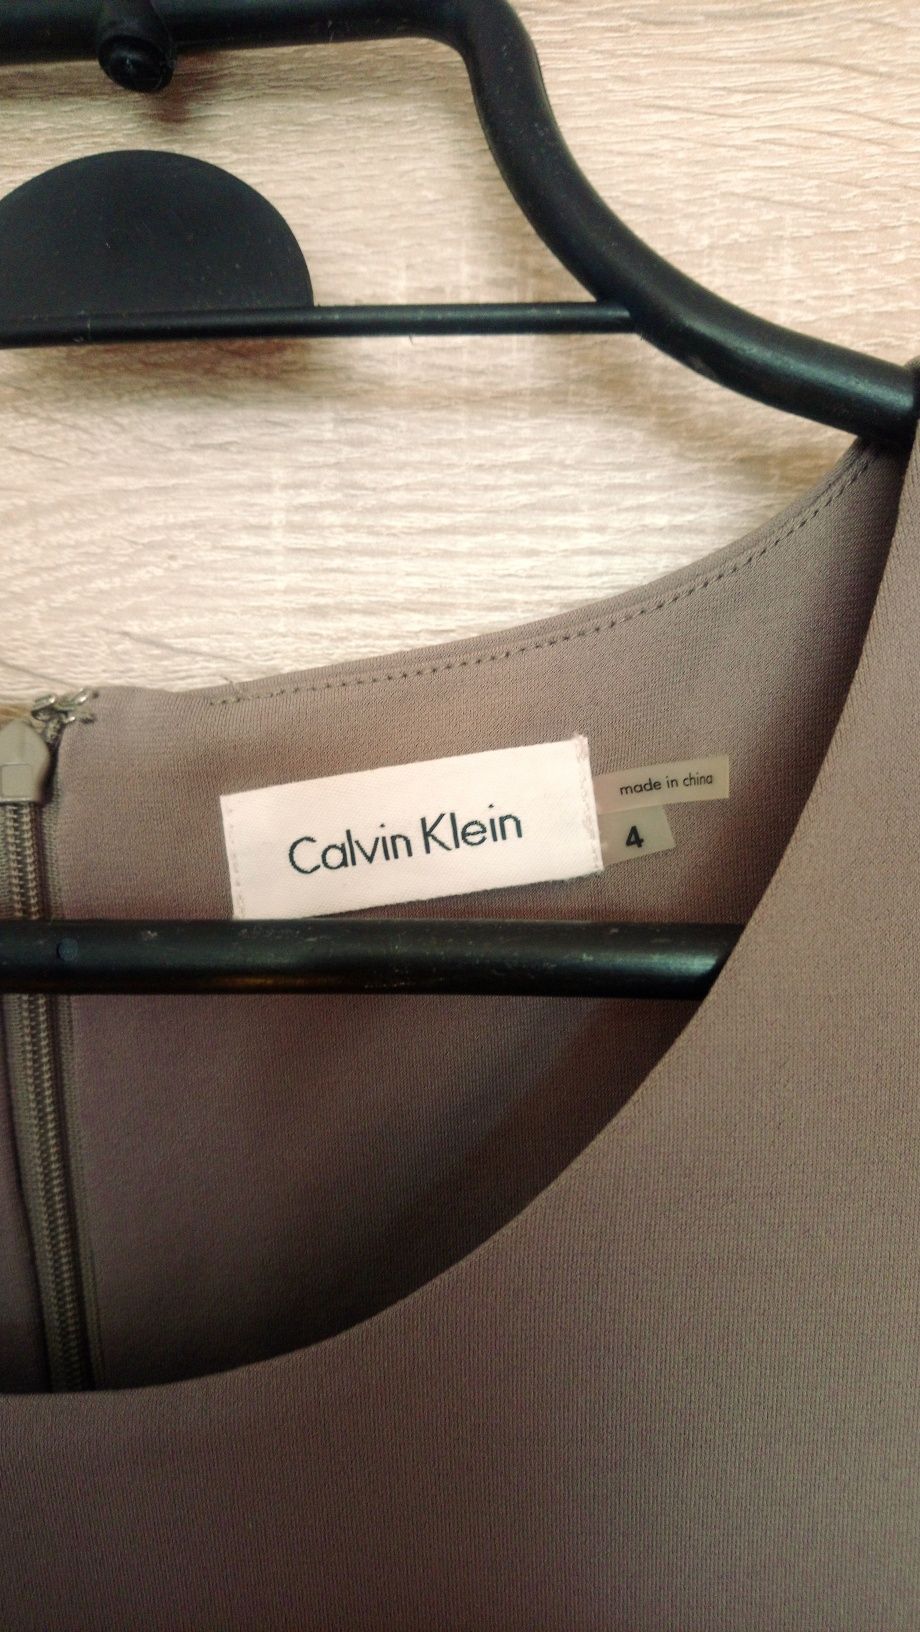 Sukienka Calvin Klein bez rękawów oliwka/khaki rozmiar 38